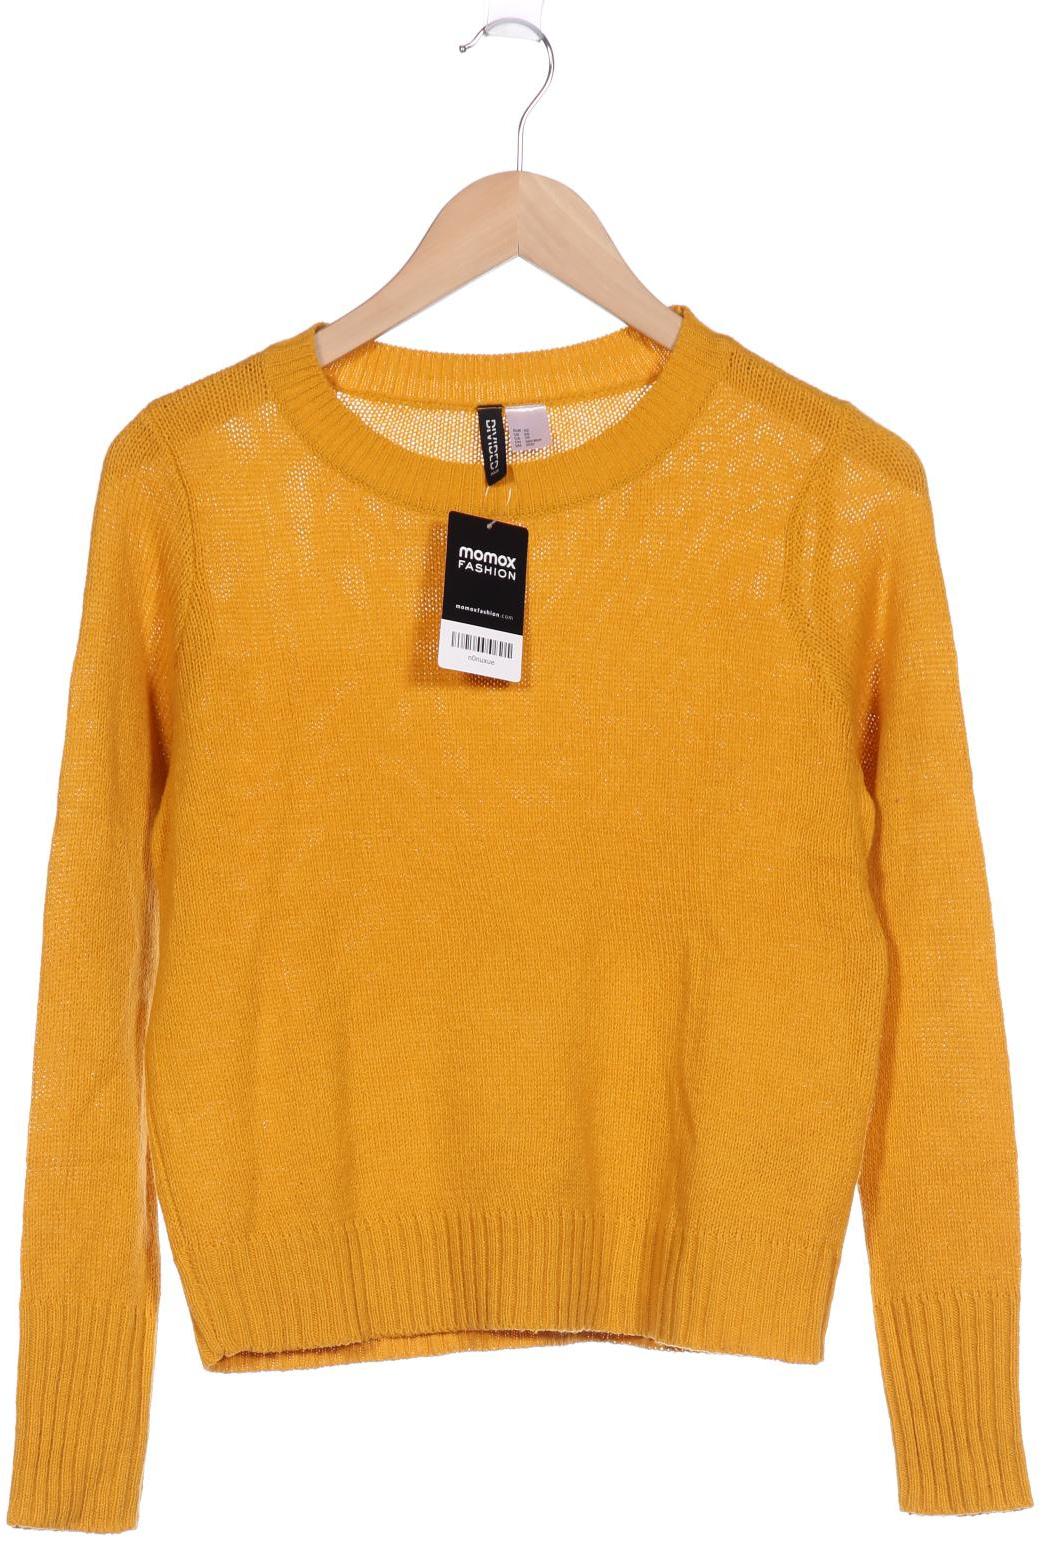 H&M Damen Pullover, gelb von H&M